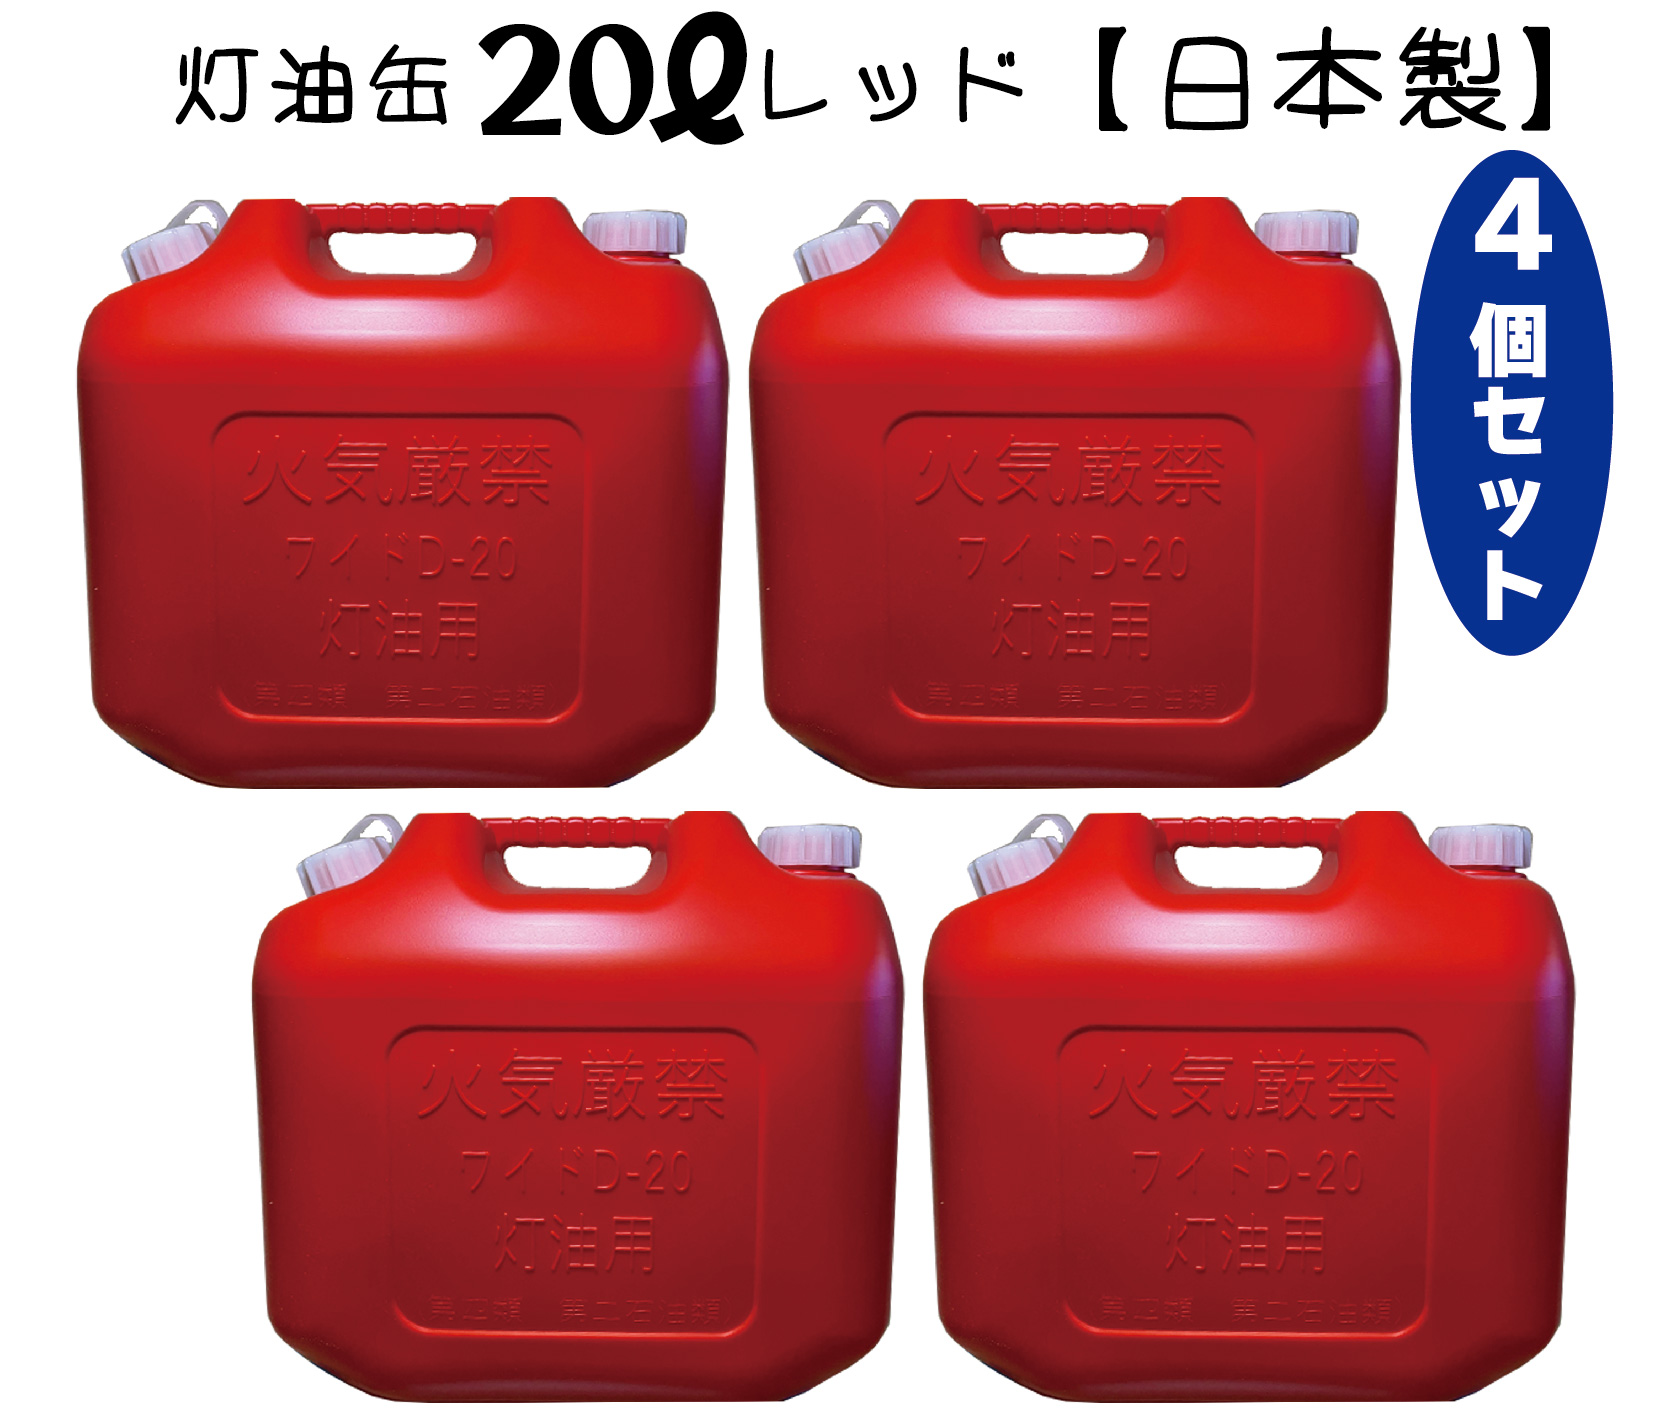 【楽天市場】灯油缶 20L 4個セット 青色【日本製】灯油タンク ポリ 